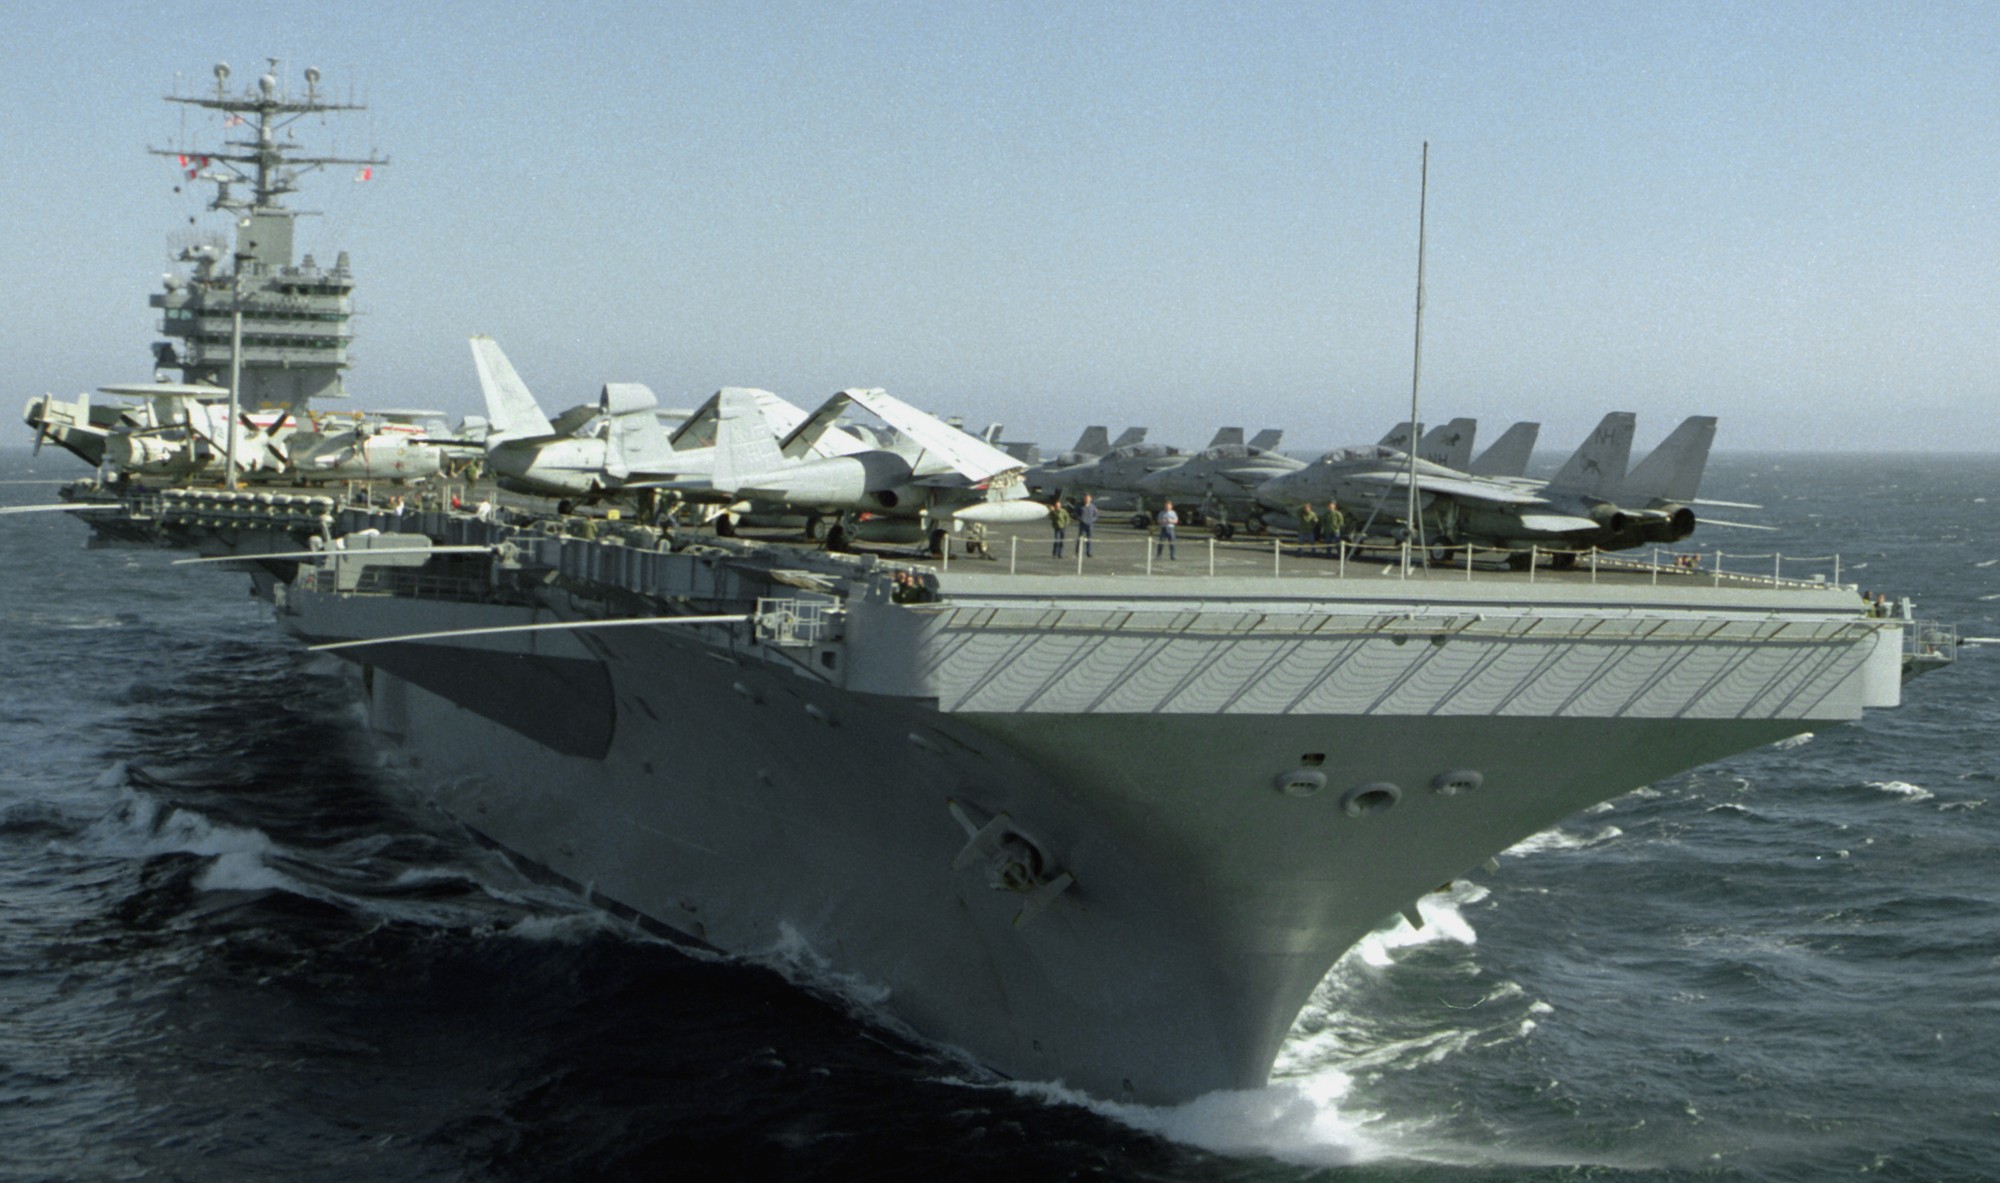 cvn-72 uss abraham lincoln nimitz class aircraft carrier air wing cvw-11 us navy 158